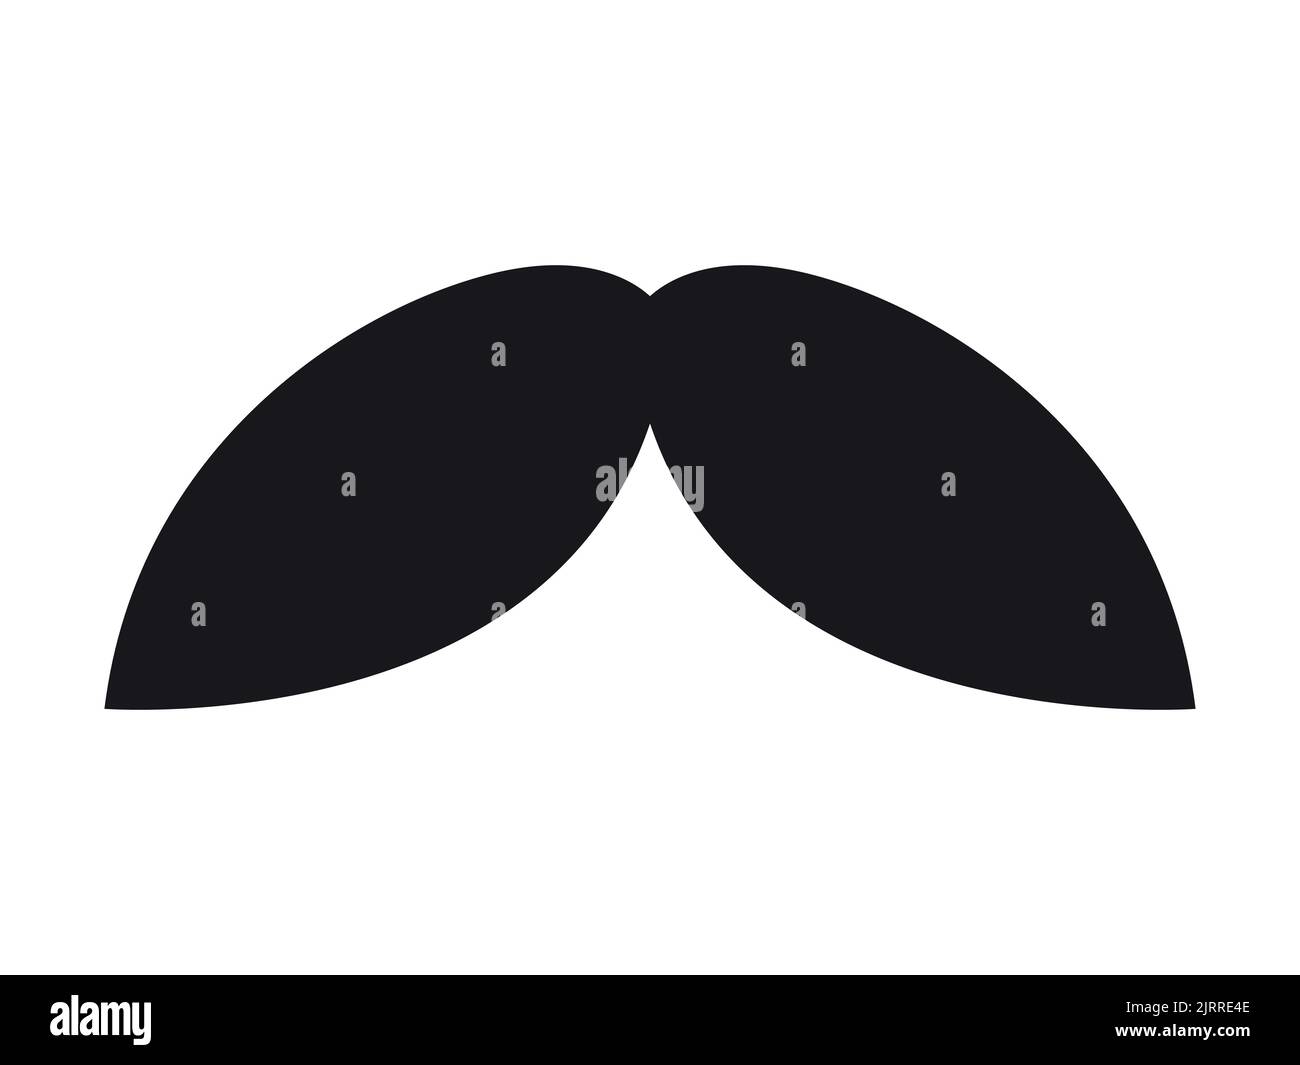 Icona Hippster Mustache. Barber simbolo silhouette isolato su sfondo bianco. Illustrazione vettoriale per la progettazione di pagine Web e app mobili. Illustrazione Vettoriale